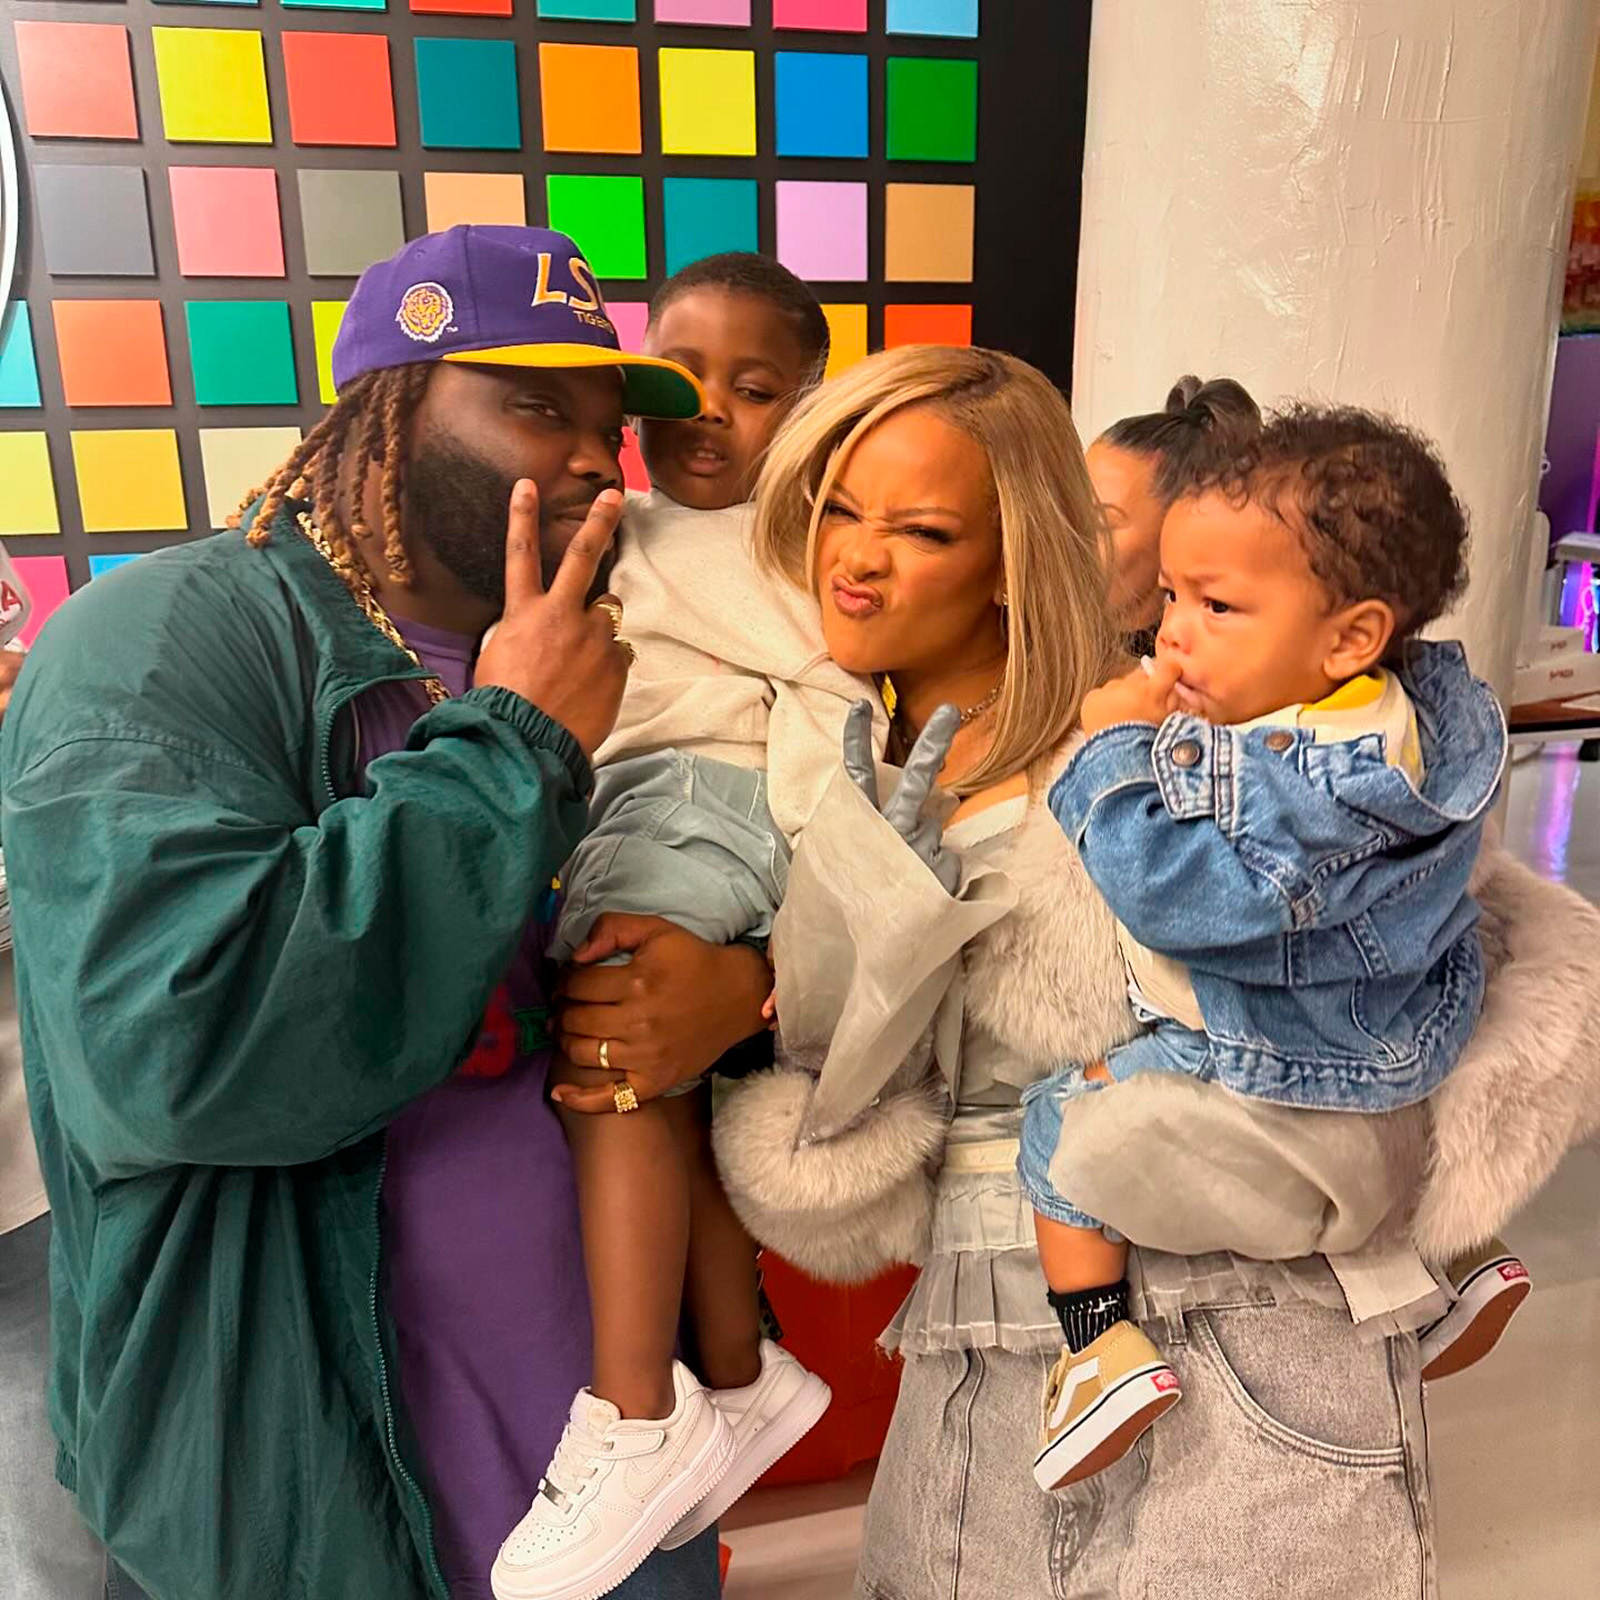 Рианна и A$AP Rocky отпраздновали 2-й день рождения сына RZA